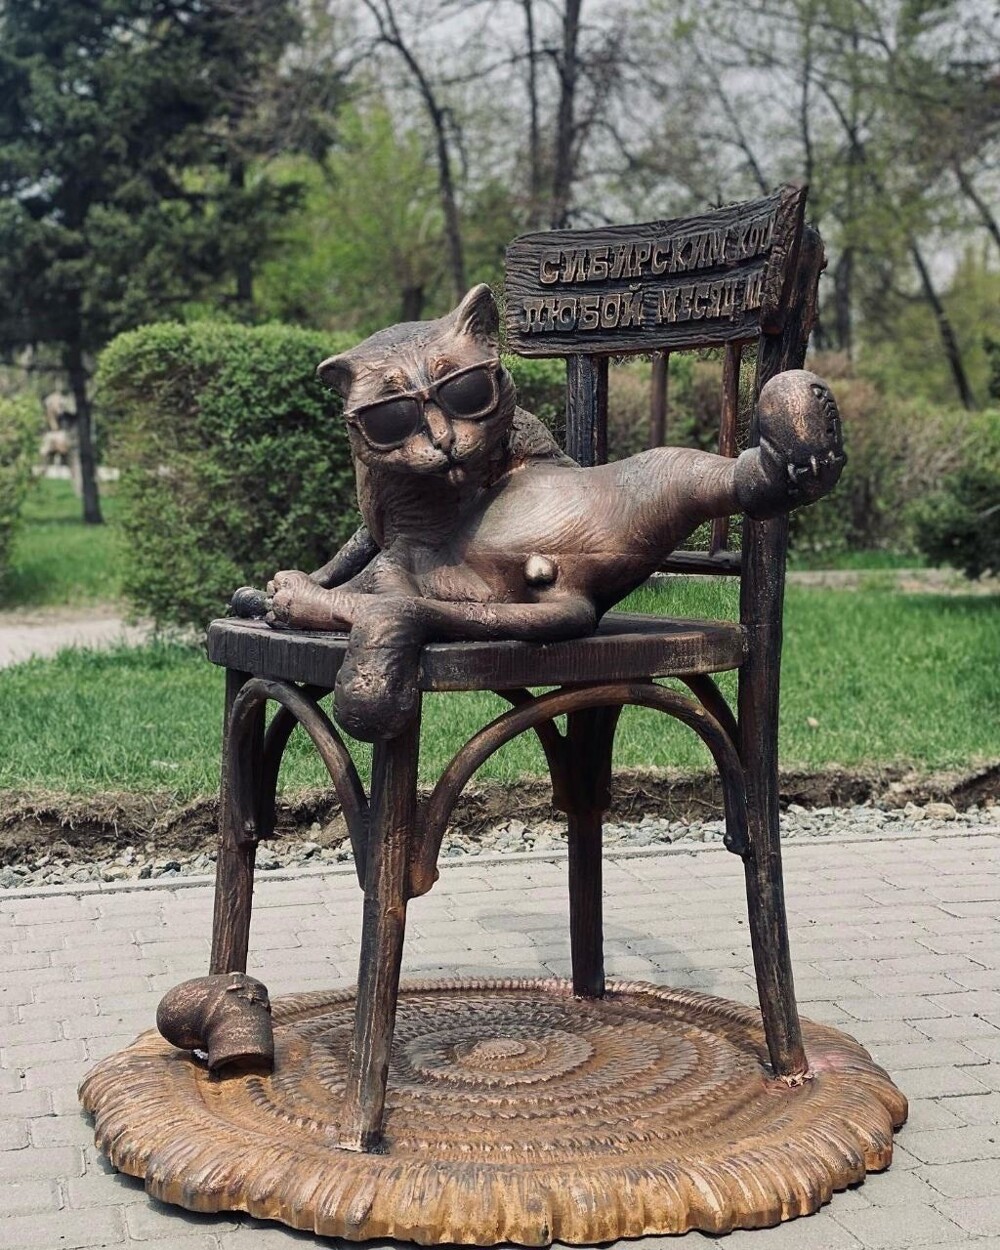 "Порочная скульптура": инсталляцию с котом убрали из центра Барнаула спустя 5 часов после установки